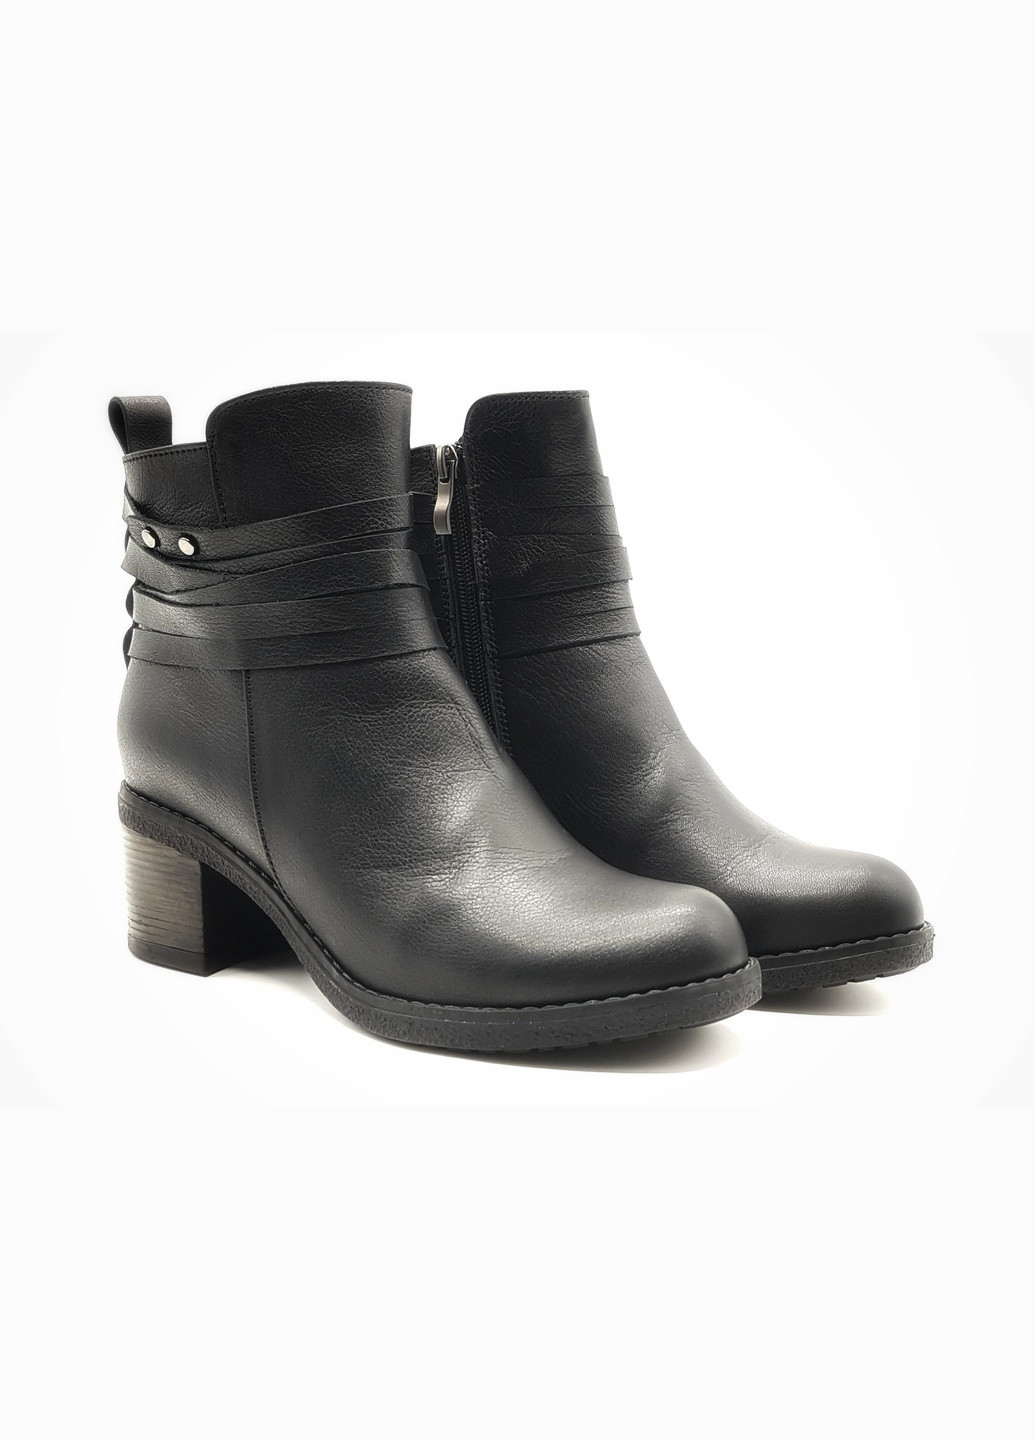 Осенние женские ботинки зимние черные кожаные kr-19-3 26 см(р) Kristal